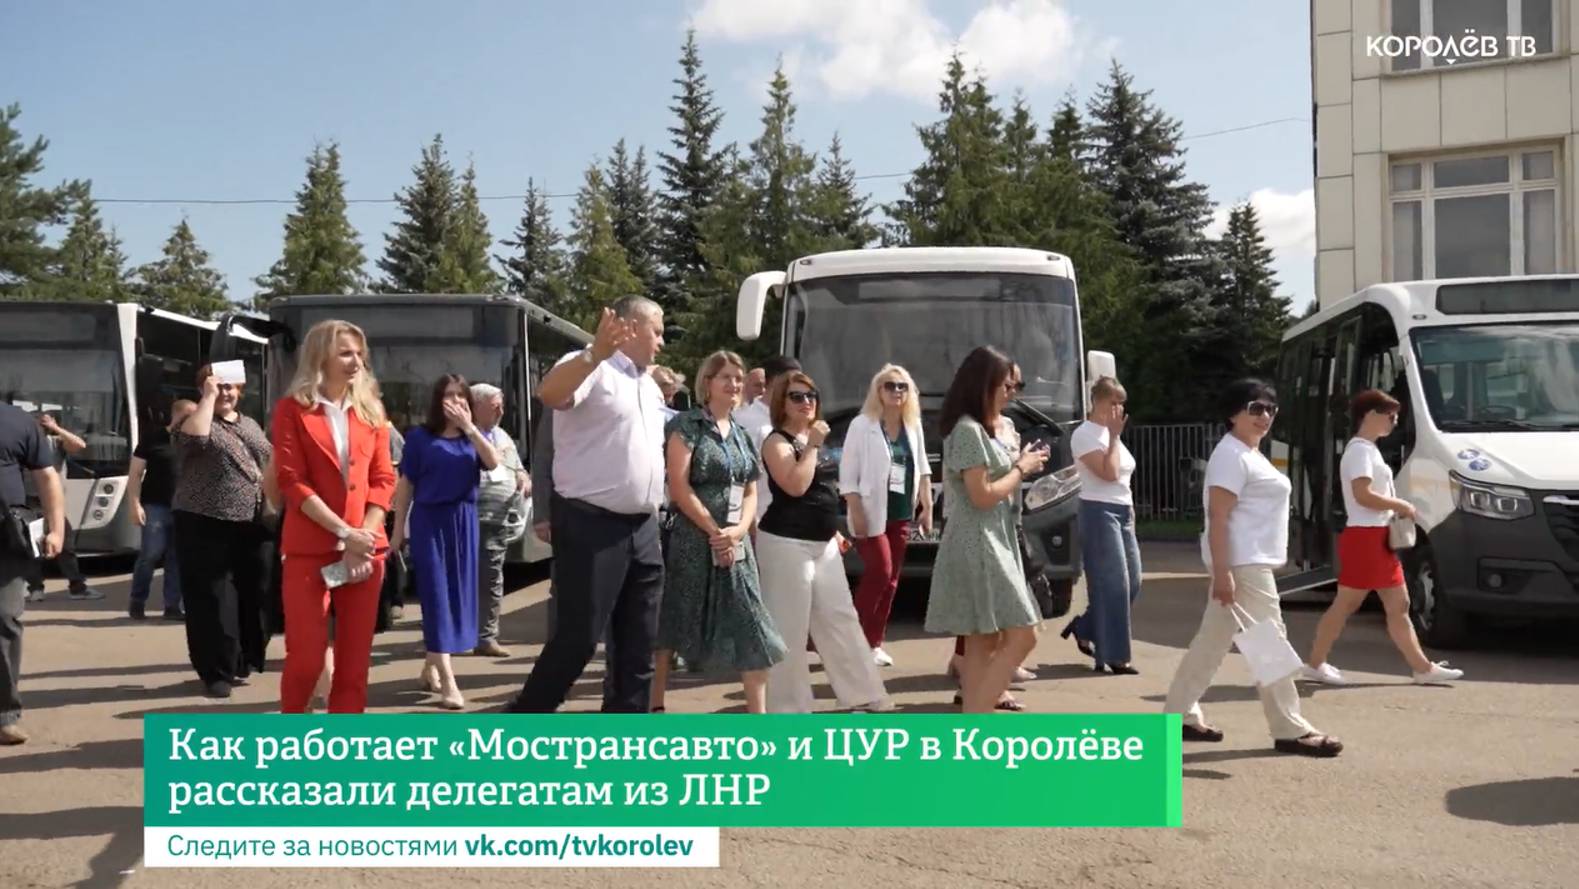 Как работает «Мострансавто» и ЦУР в Королёве, рассказали делегатам из ЛНР